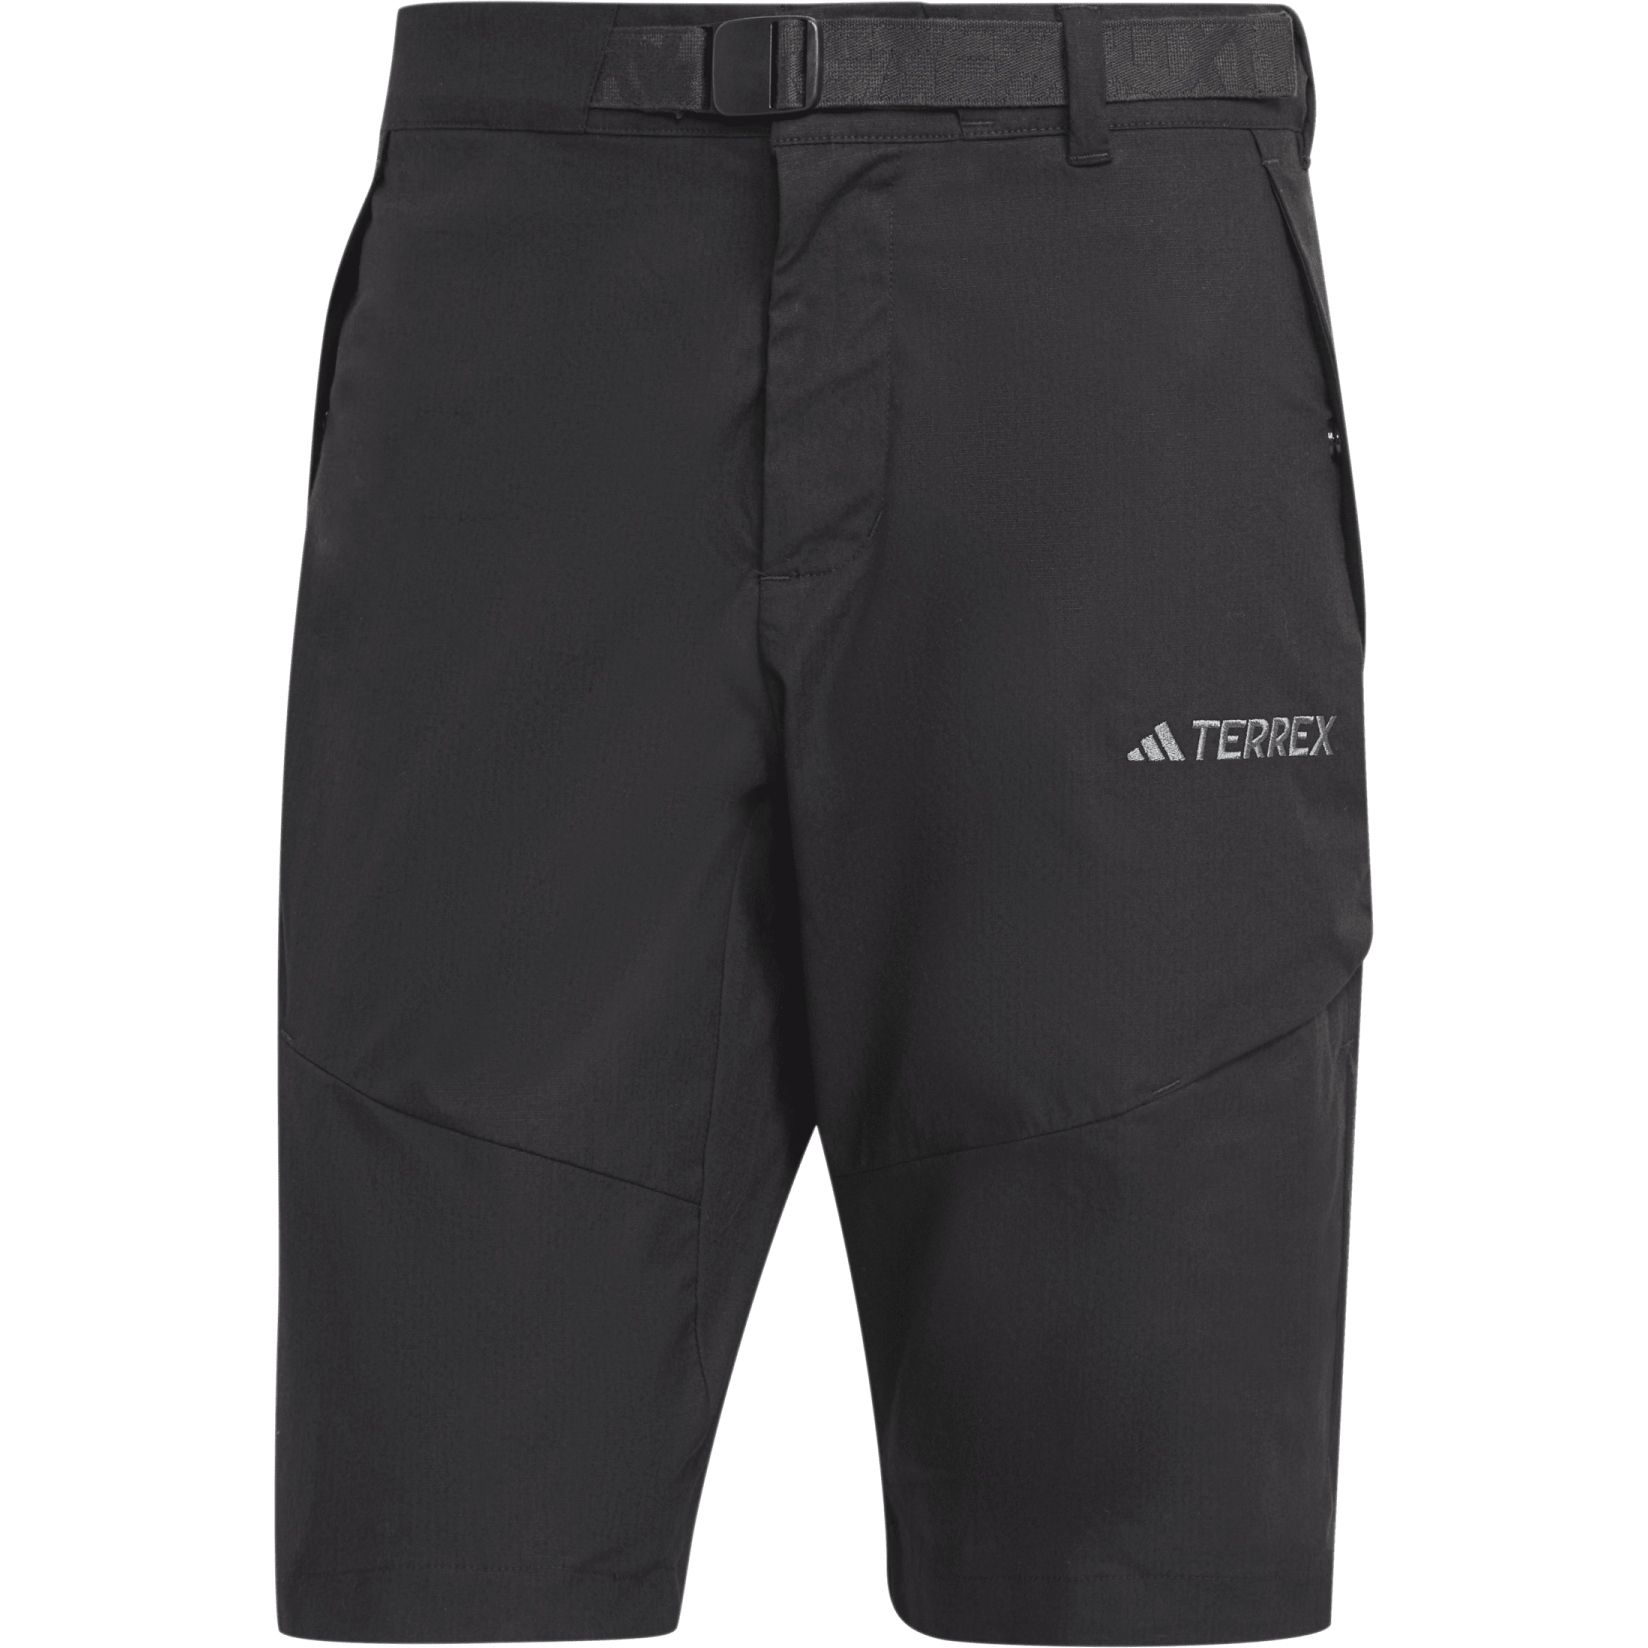 Produktbild von adidas Terrex Xploric Shorts Herren - schwarz IN6500